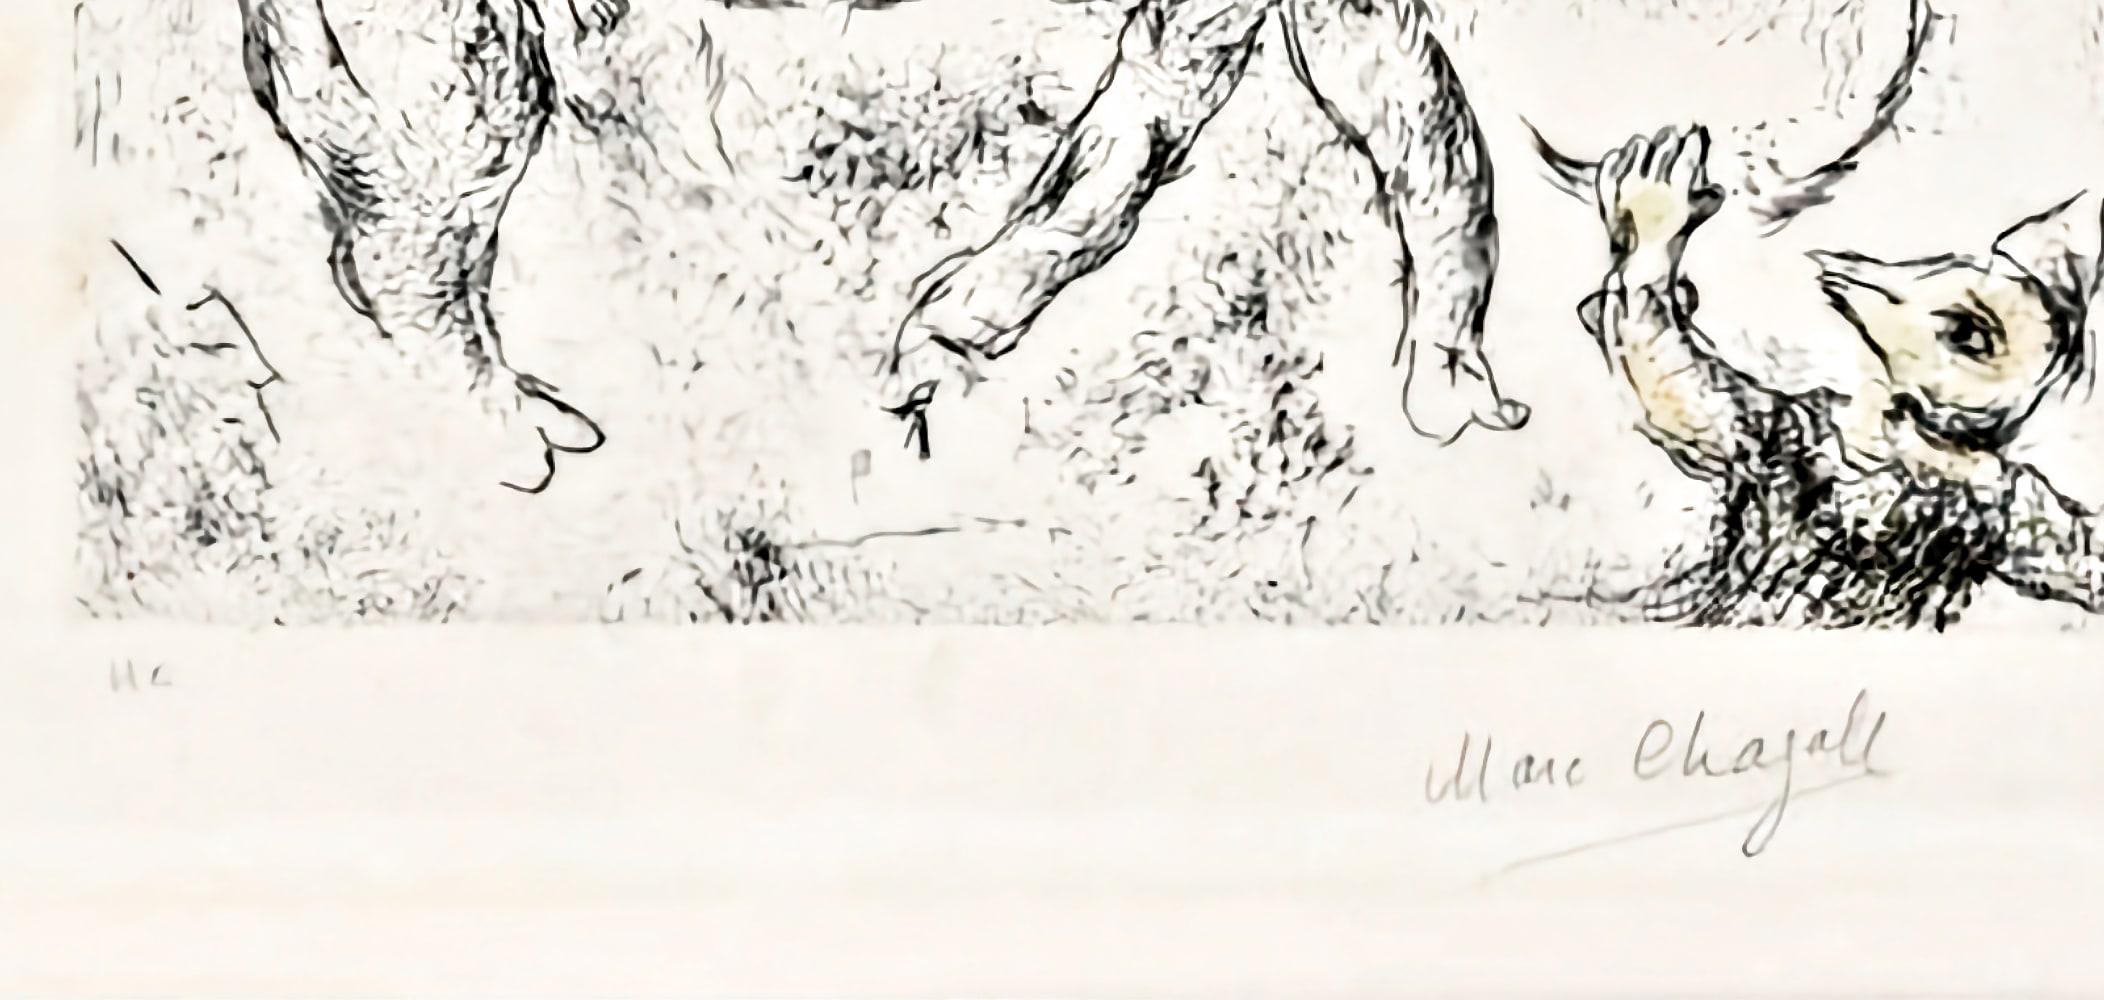 Marc Chagall - Ce lui qui dit les choses sans rien dire (plate 22)